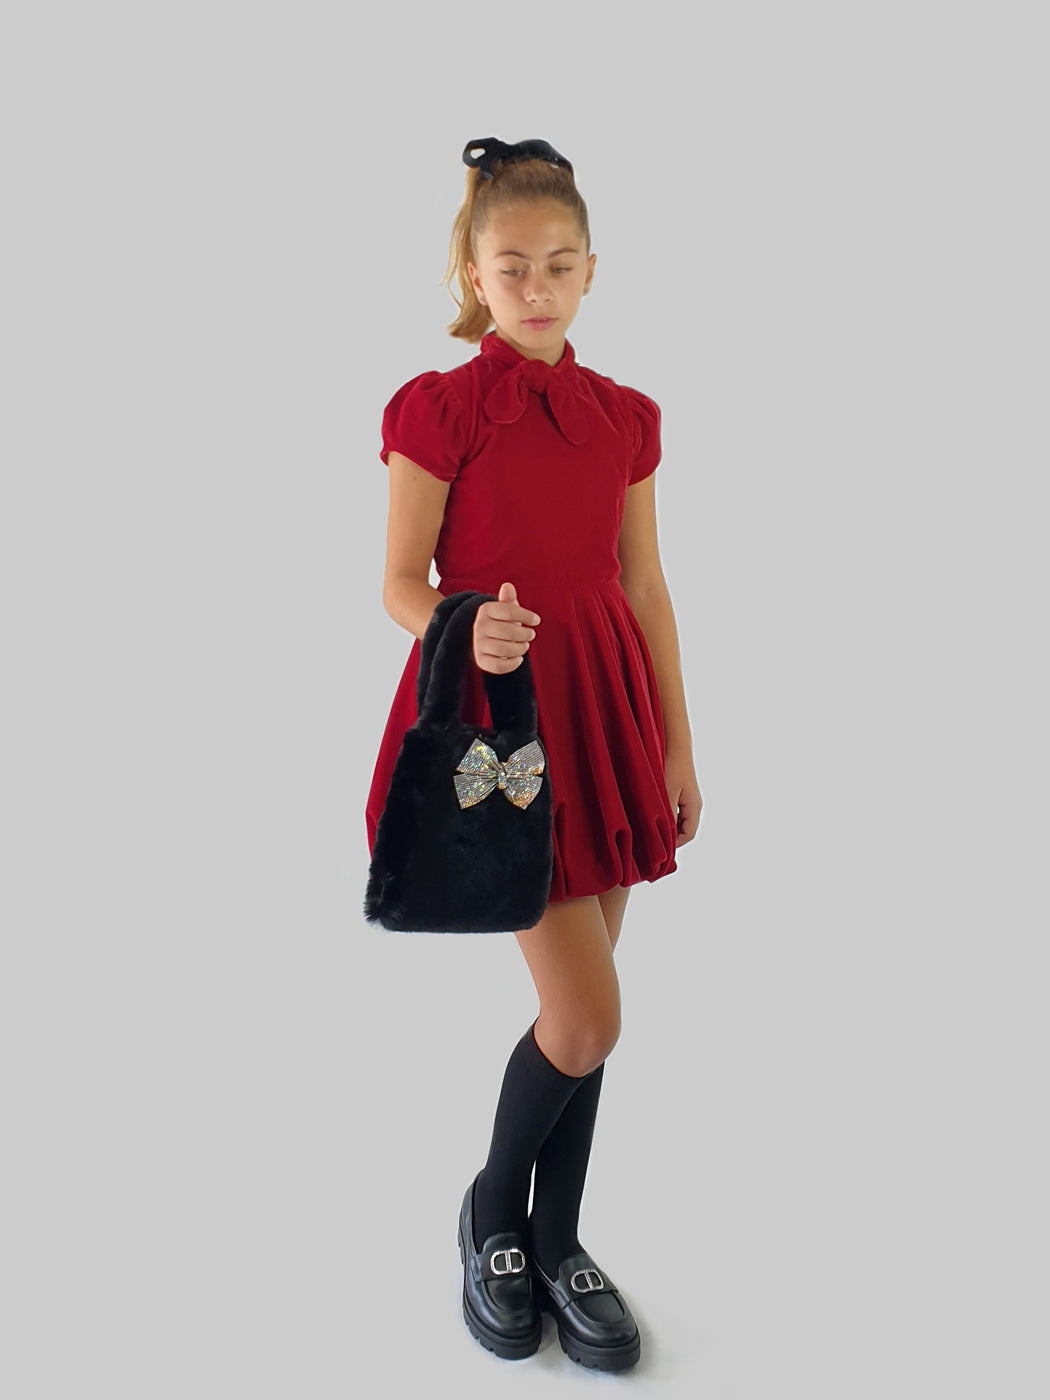 Κόκκινο βελούδινο φόρεμα με πιέτες για κορίτσια - LAVA